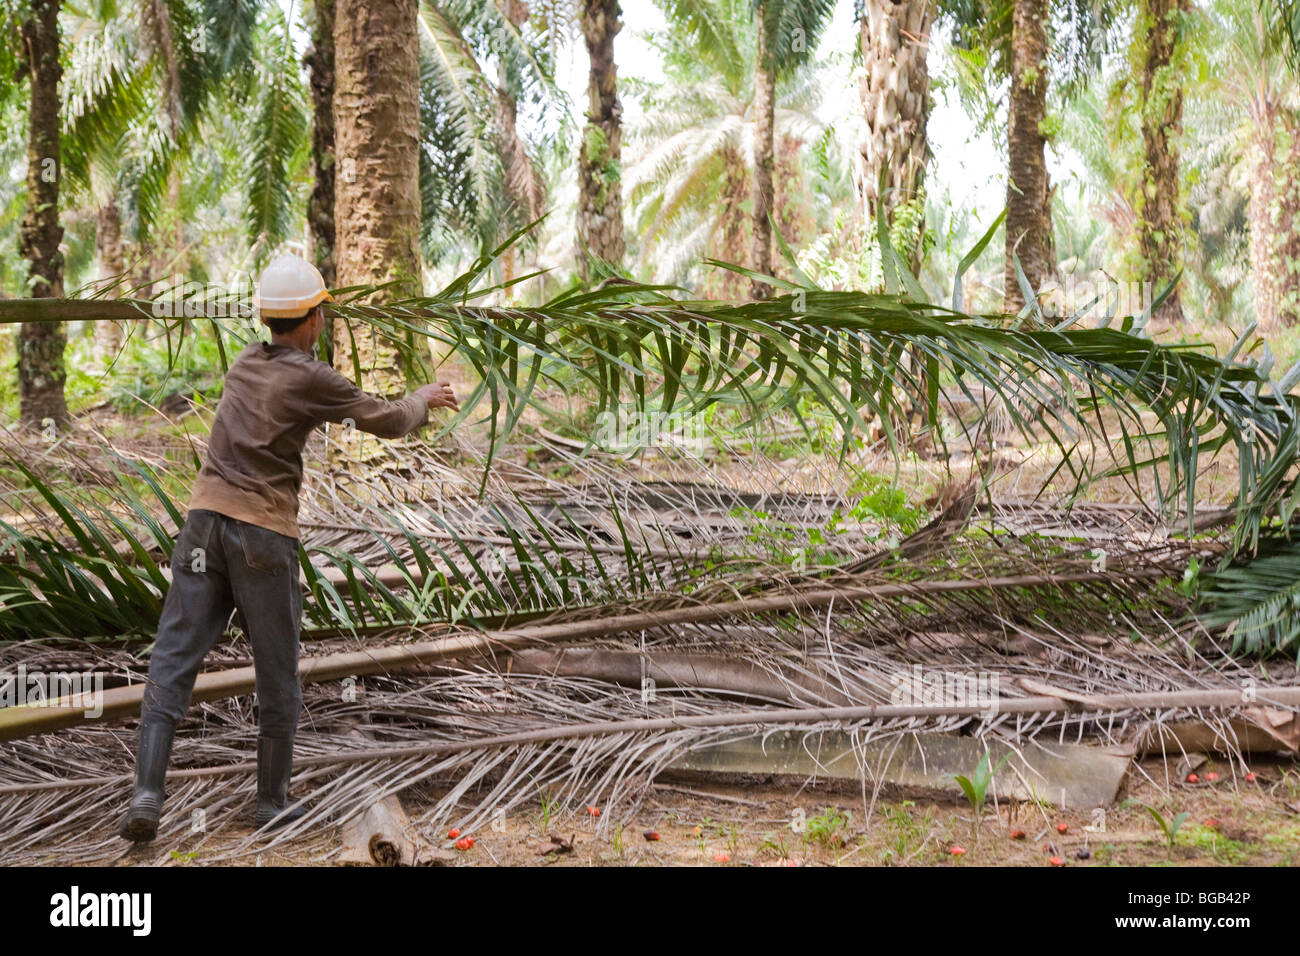 Un travailleur d'une collecte de feuilles de palmier, d'huile de palme rouge avec des fruits sur la masse. Sindora la plantation de palmiers à huile. Banque D'Images